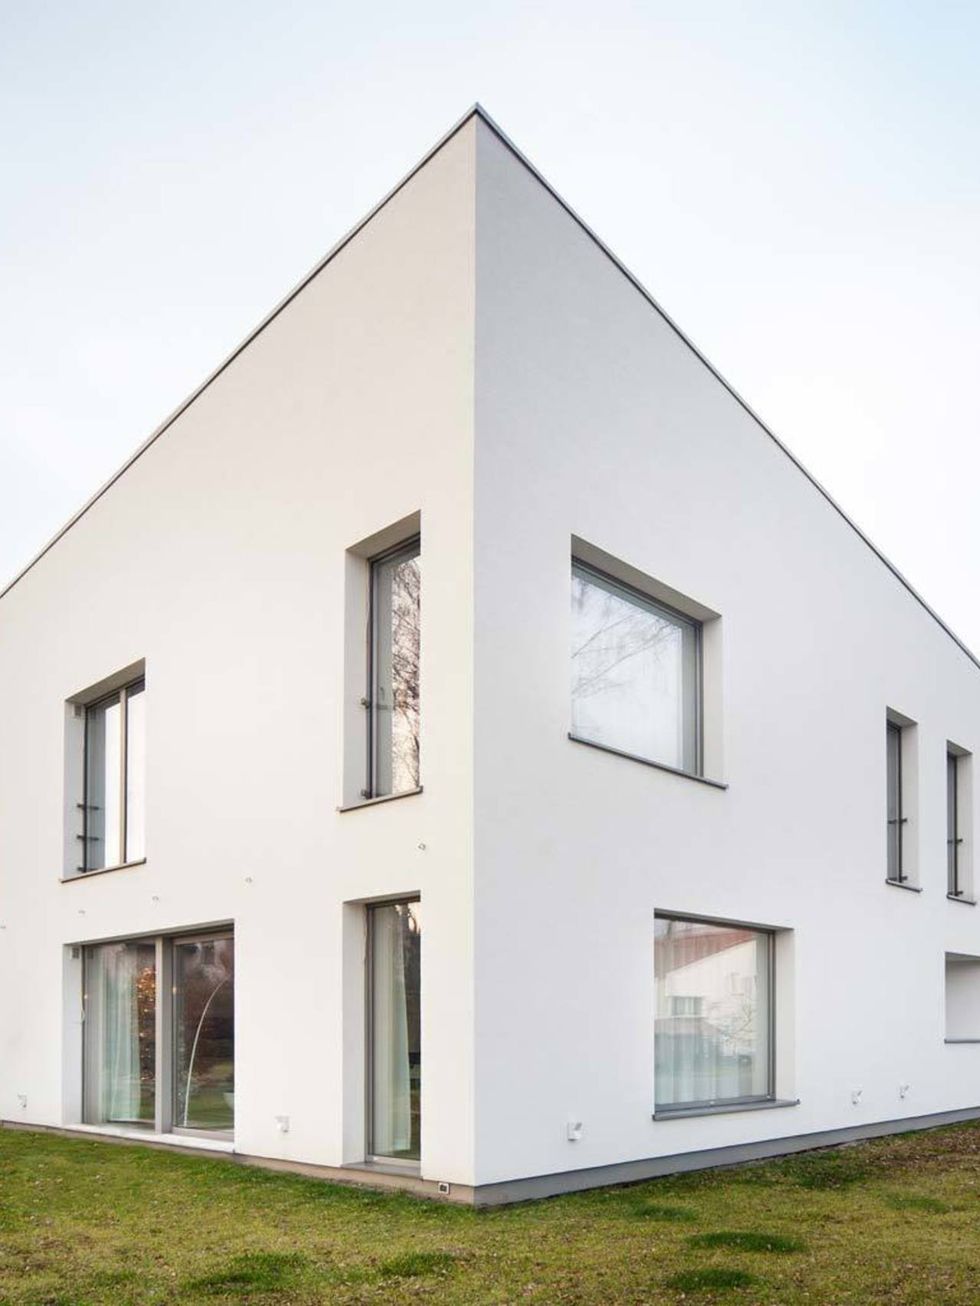 <p>Esta casa de color blanco y forma irregular está ubicada en el distrito norte de Gliwice - Zerniki, Polonia.</p>